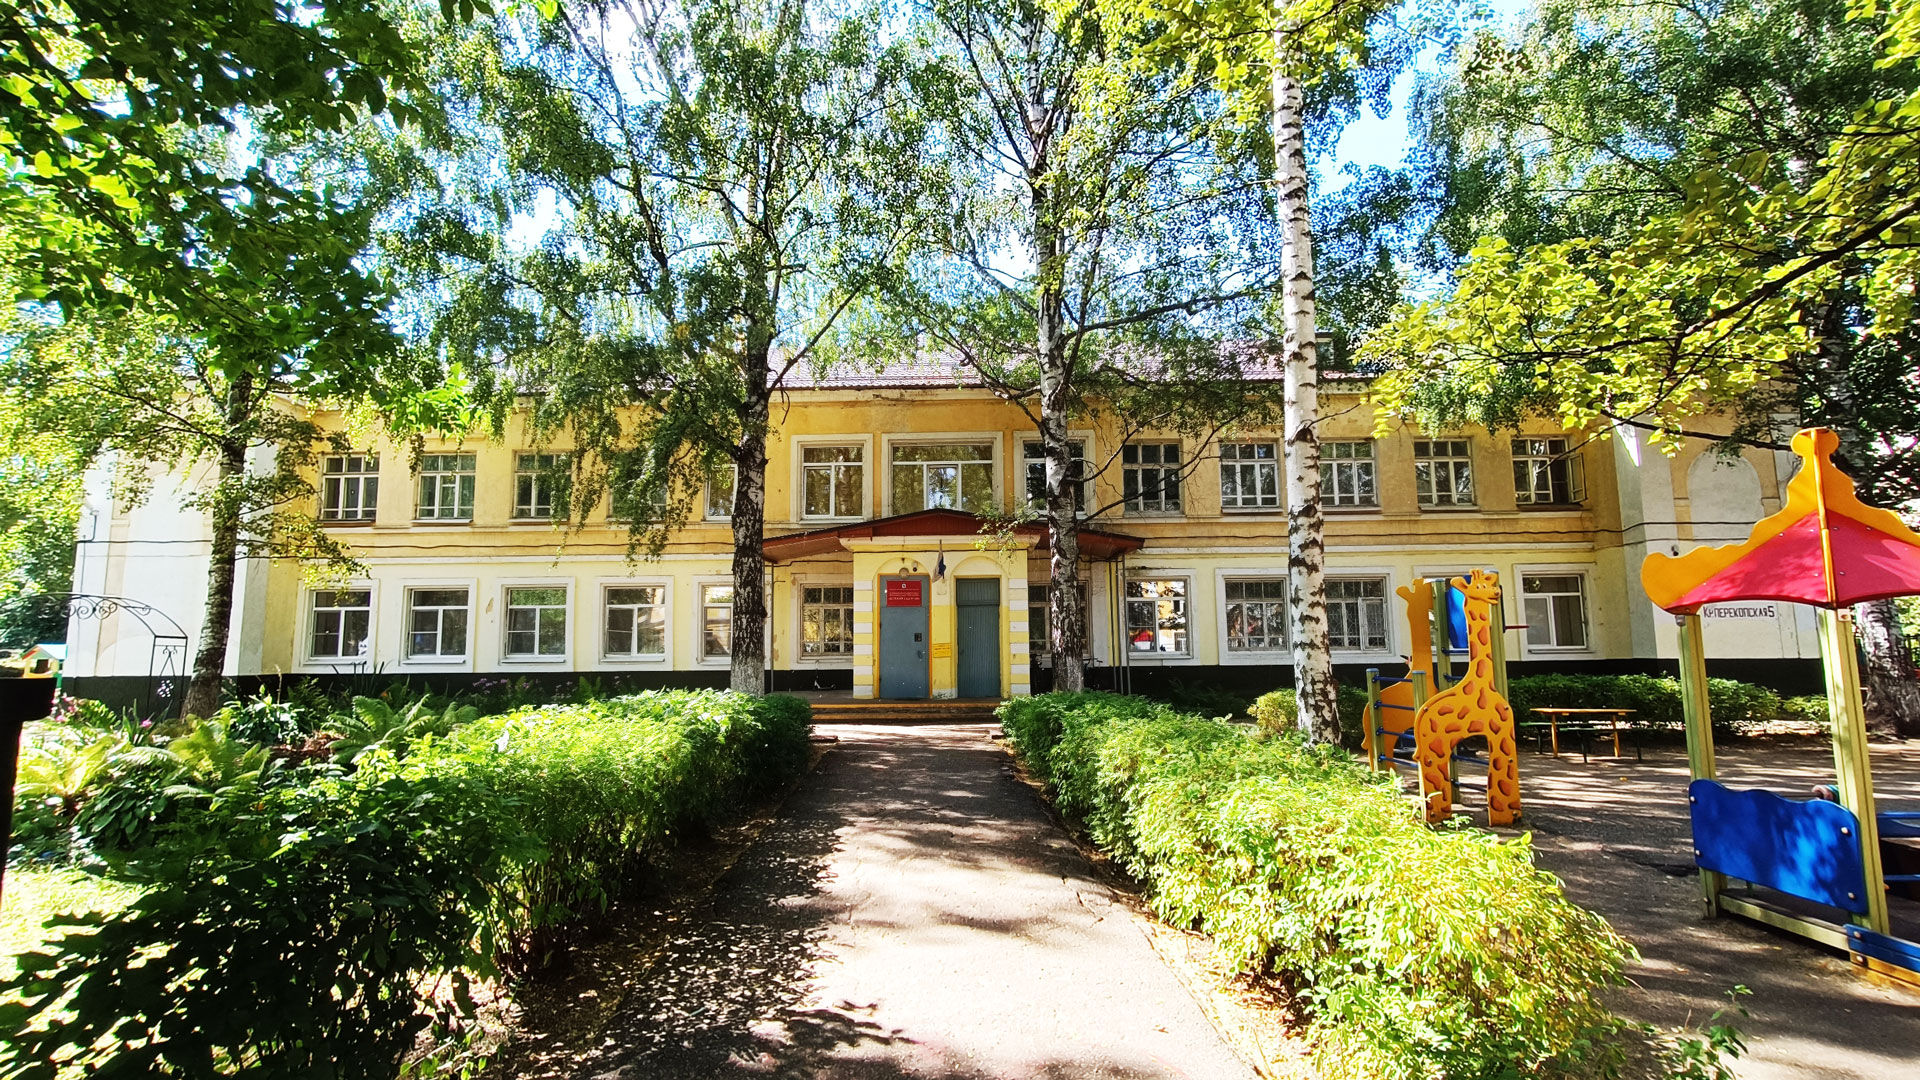 Детский сад 185 Ярославль: общий вид здания.